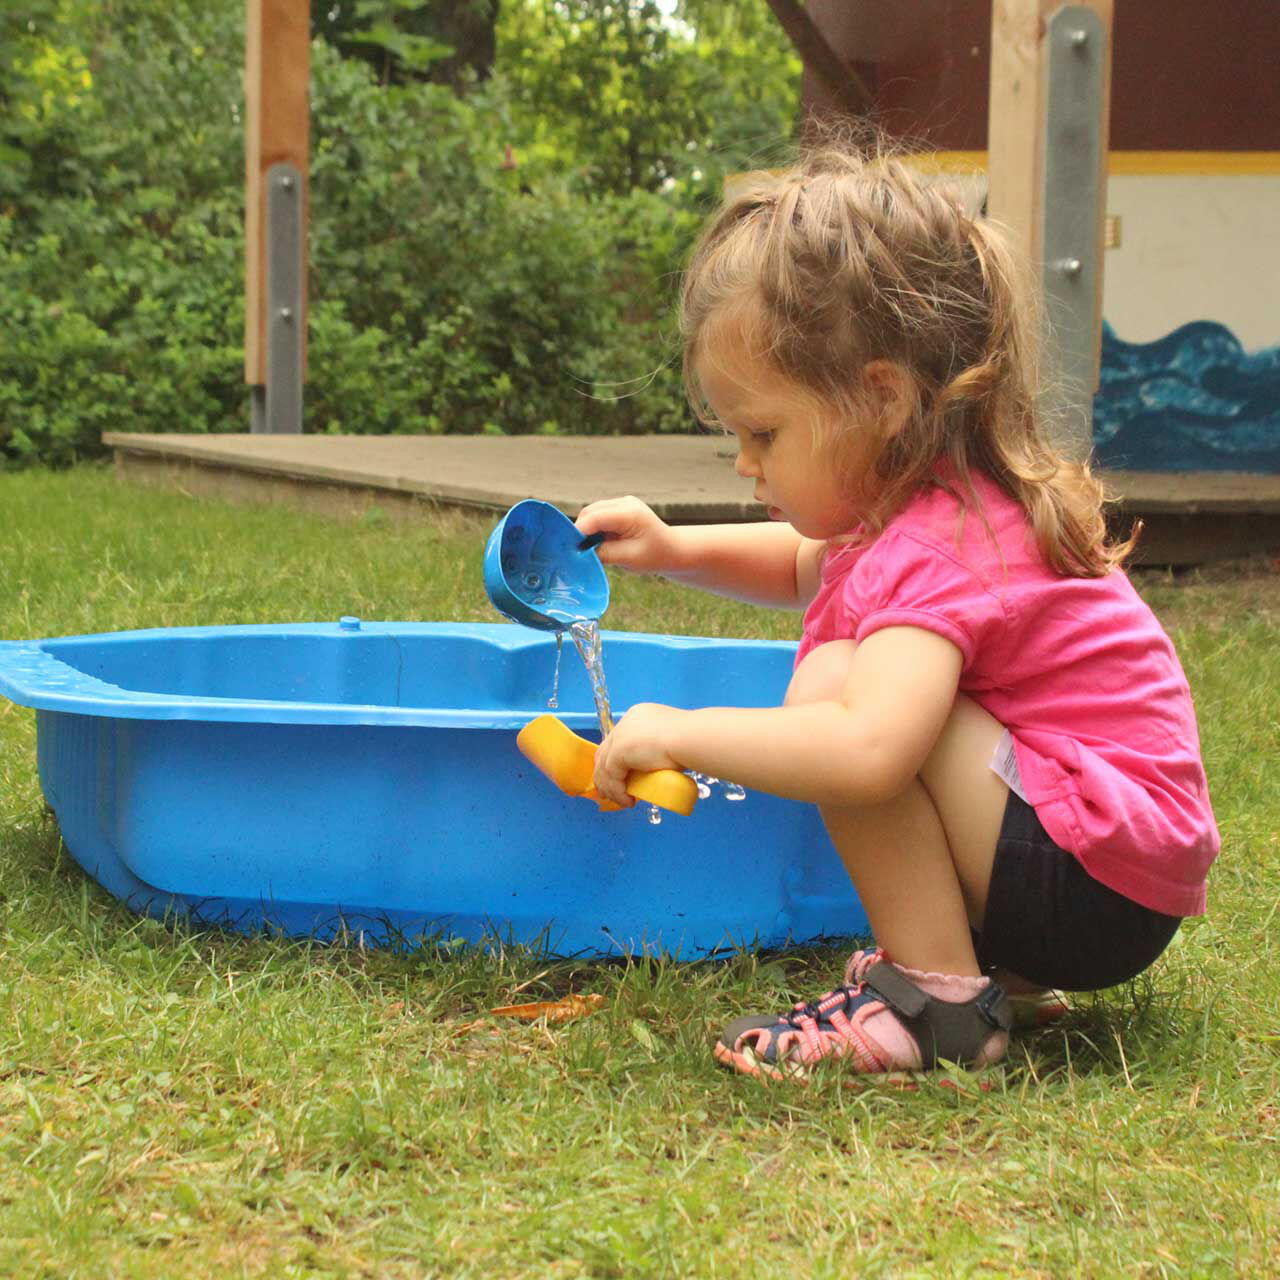 Ein Kleinkind spielt mit einer Schaufel im Garten und nutzt dazu das Wasser aus einer blauen Plastikwanne.